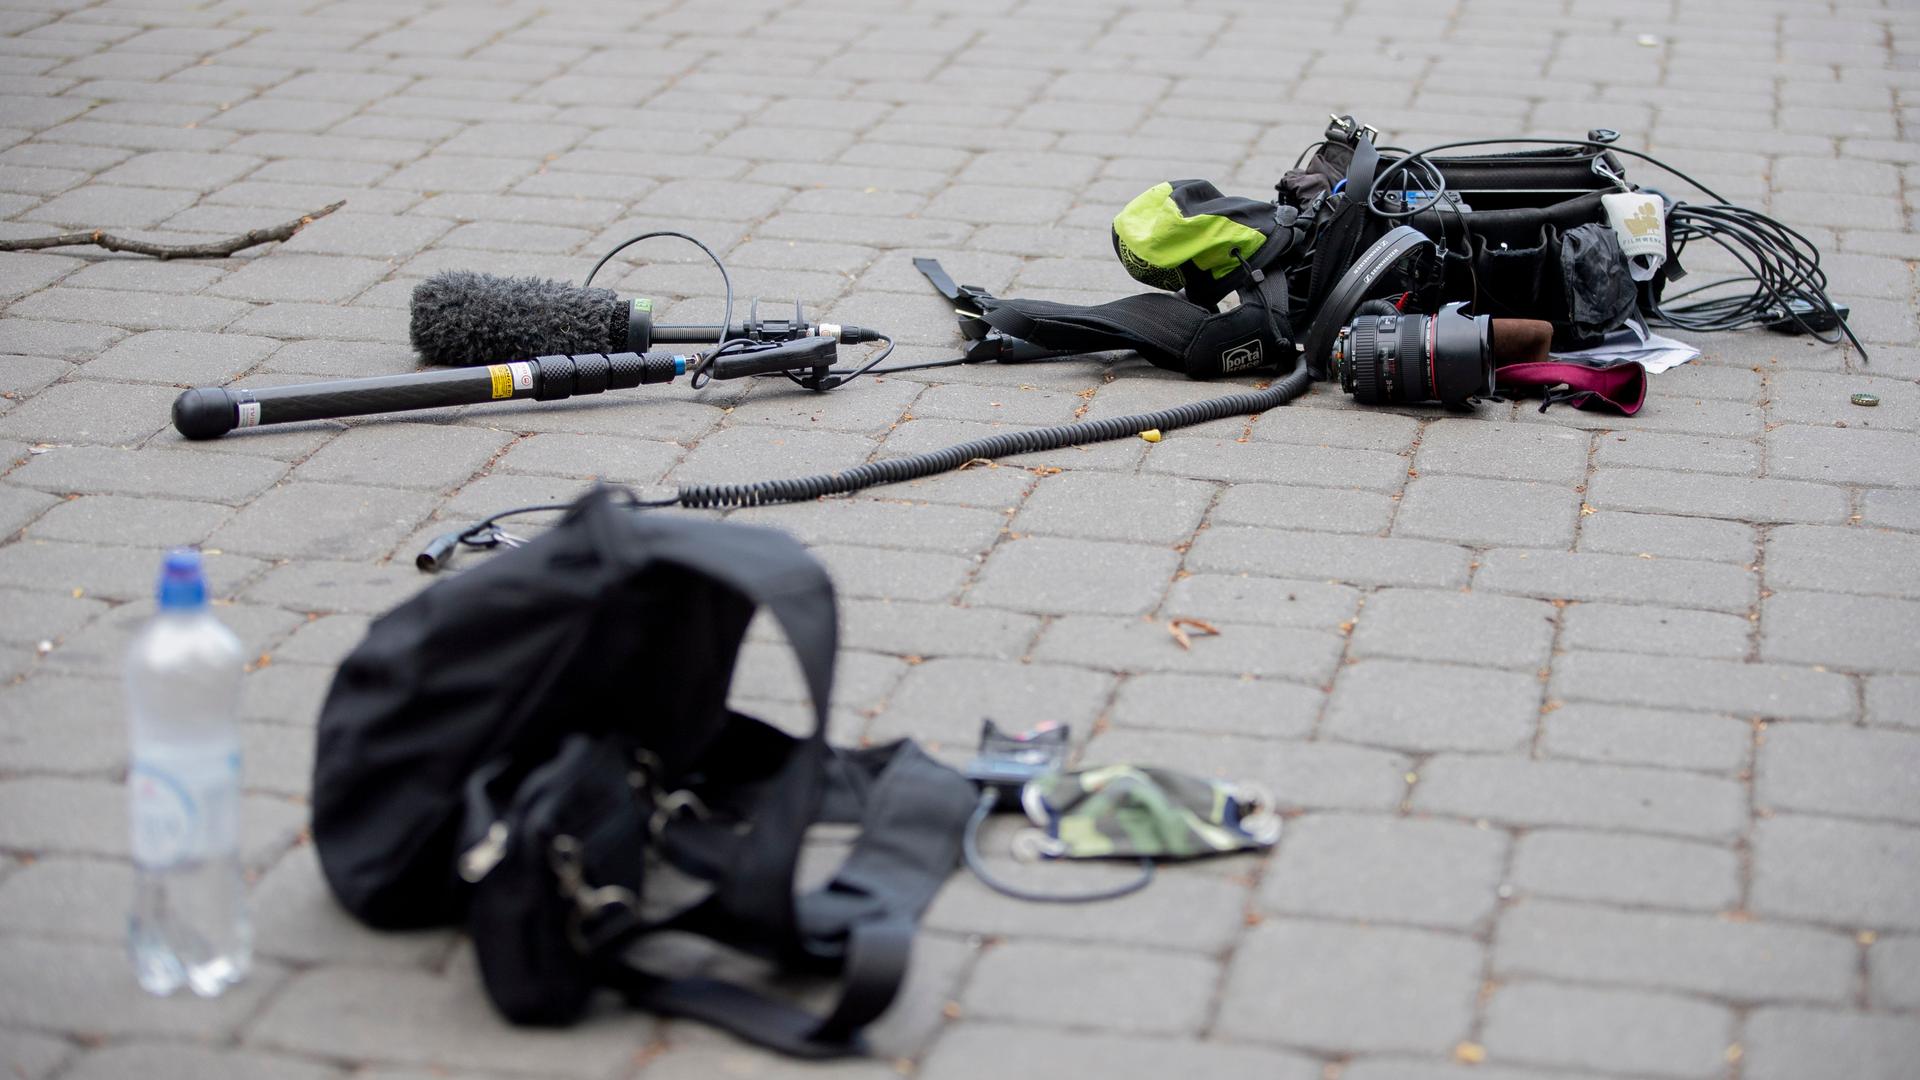 Die Ausrüstung eines Kamerateams liegt nach einem Übergriff zwischen Alexanderplatz und Hackescher Markt auf dem Boden. Laut Polizeisprecherin wurden sieben Personen des Kamerateams von einer mehrköpfigen Personengruppe angegriffen, fünf wurden verletzt und vier von der Feuerwehr in ein Krankenhaus gebracht.